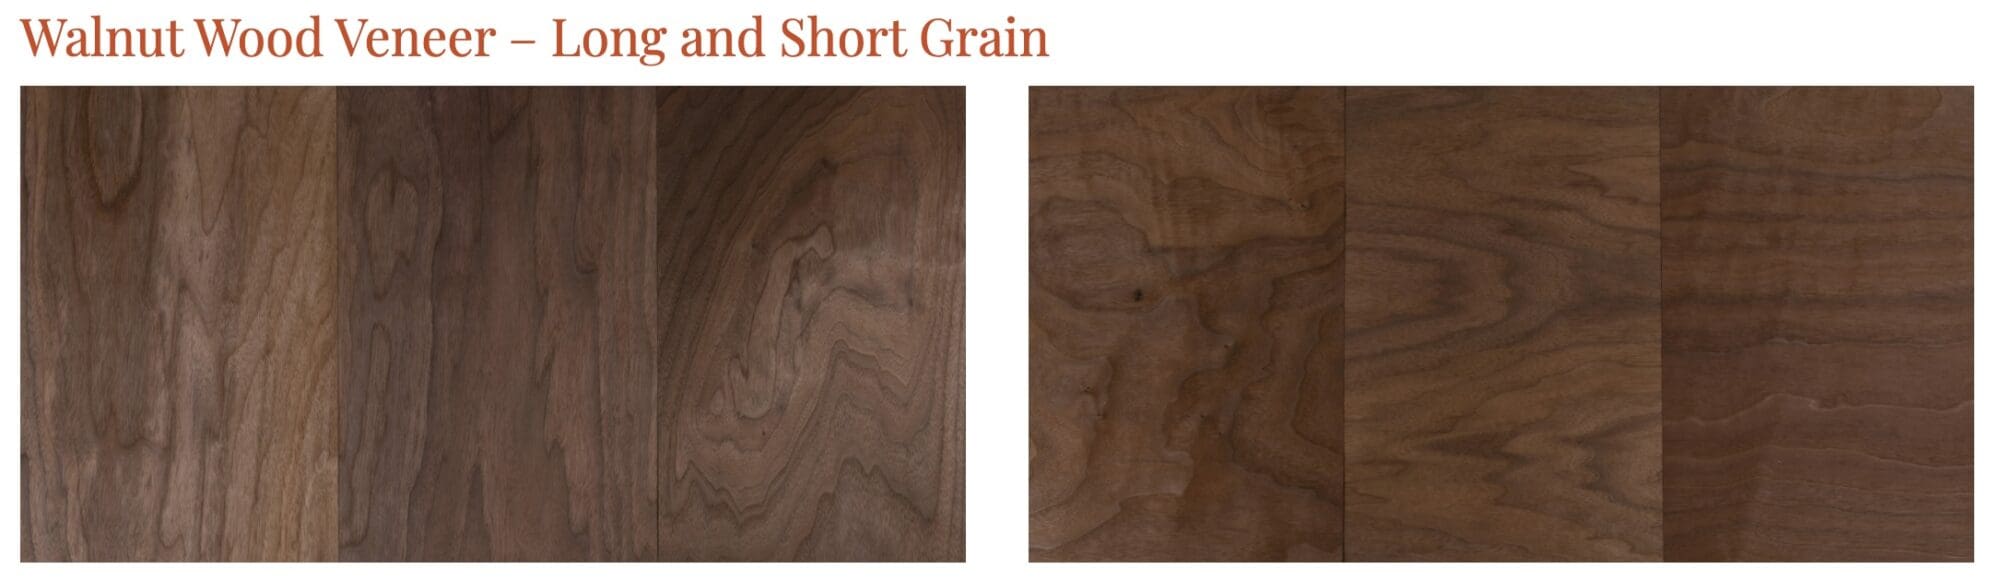 Walnut Wood Veneer Long and Short Grain